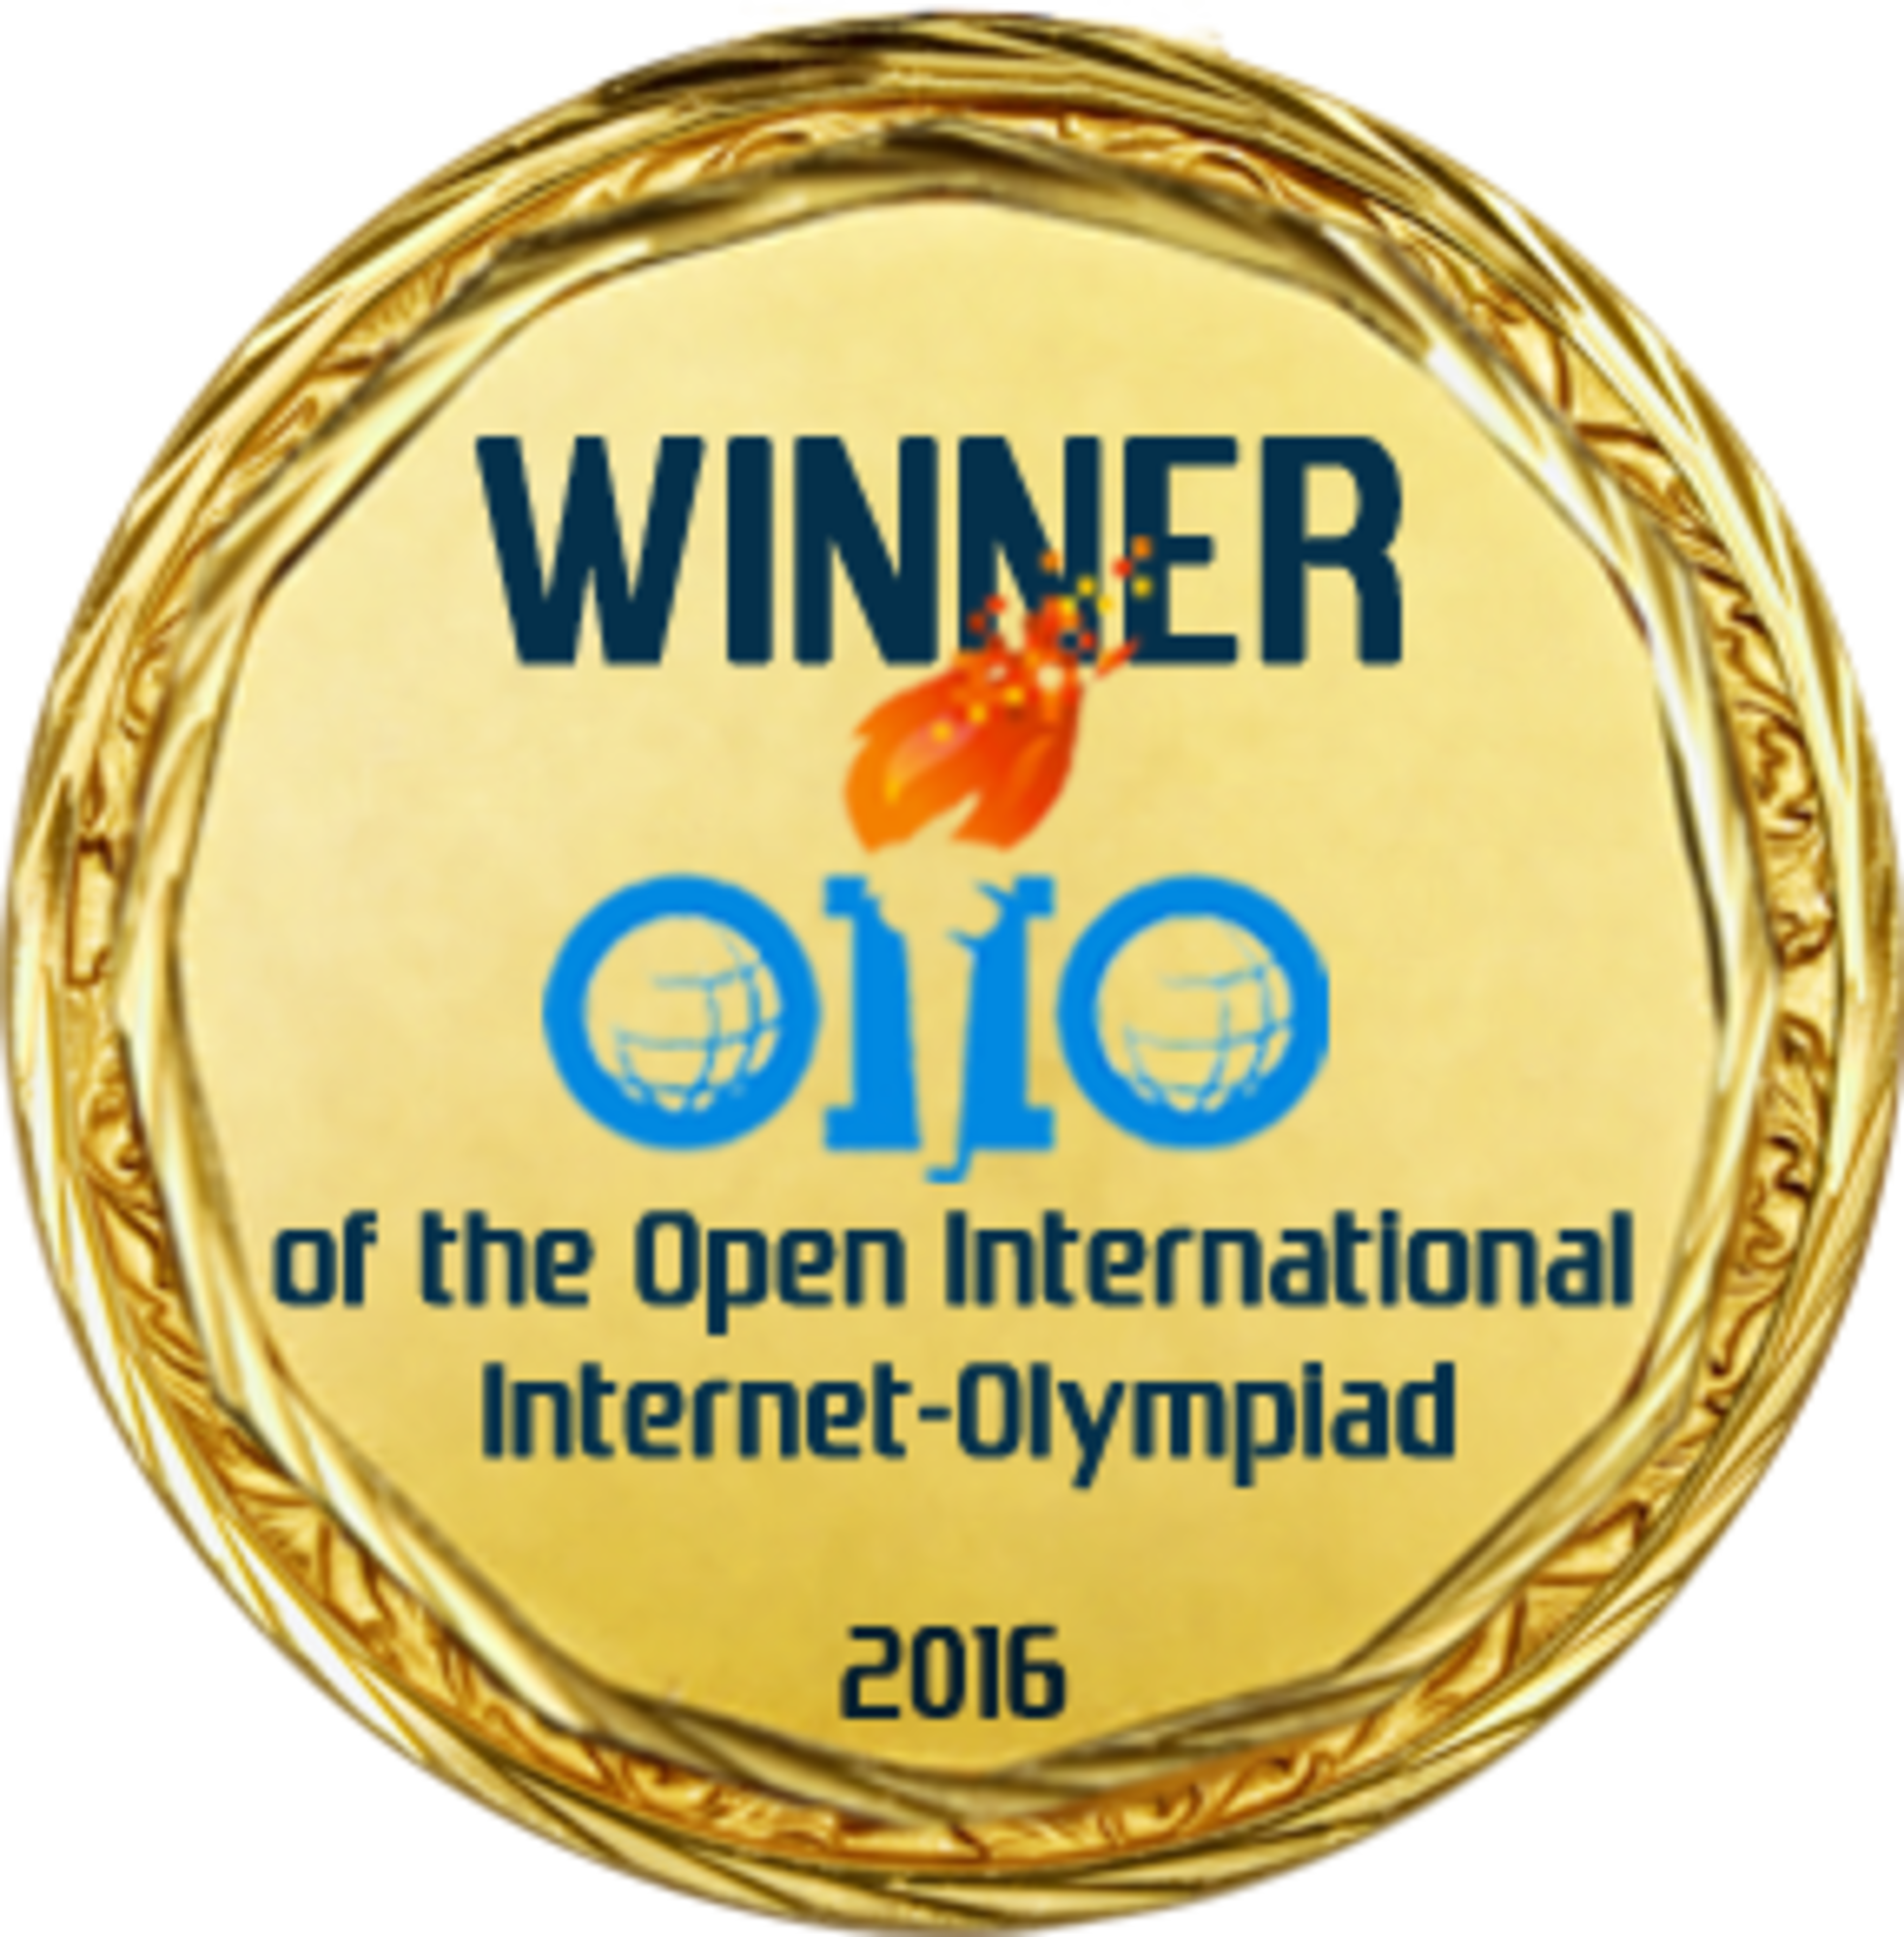 Open int. Открытые международные студенческие интернет-олимпиады. Открытой международной студенческой интернет-олимпиады. OIIO – open International Internet-Olympiad.